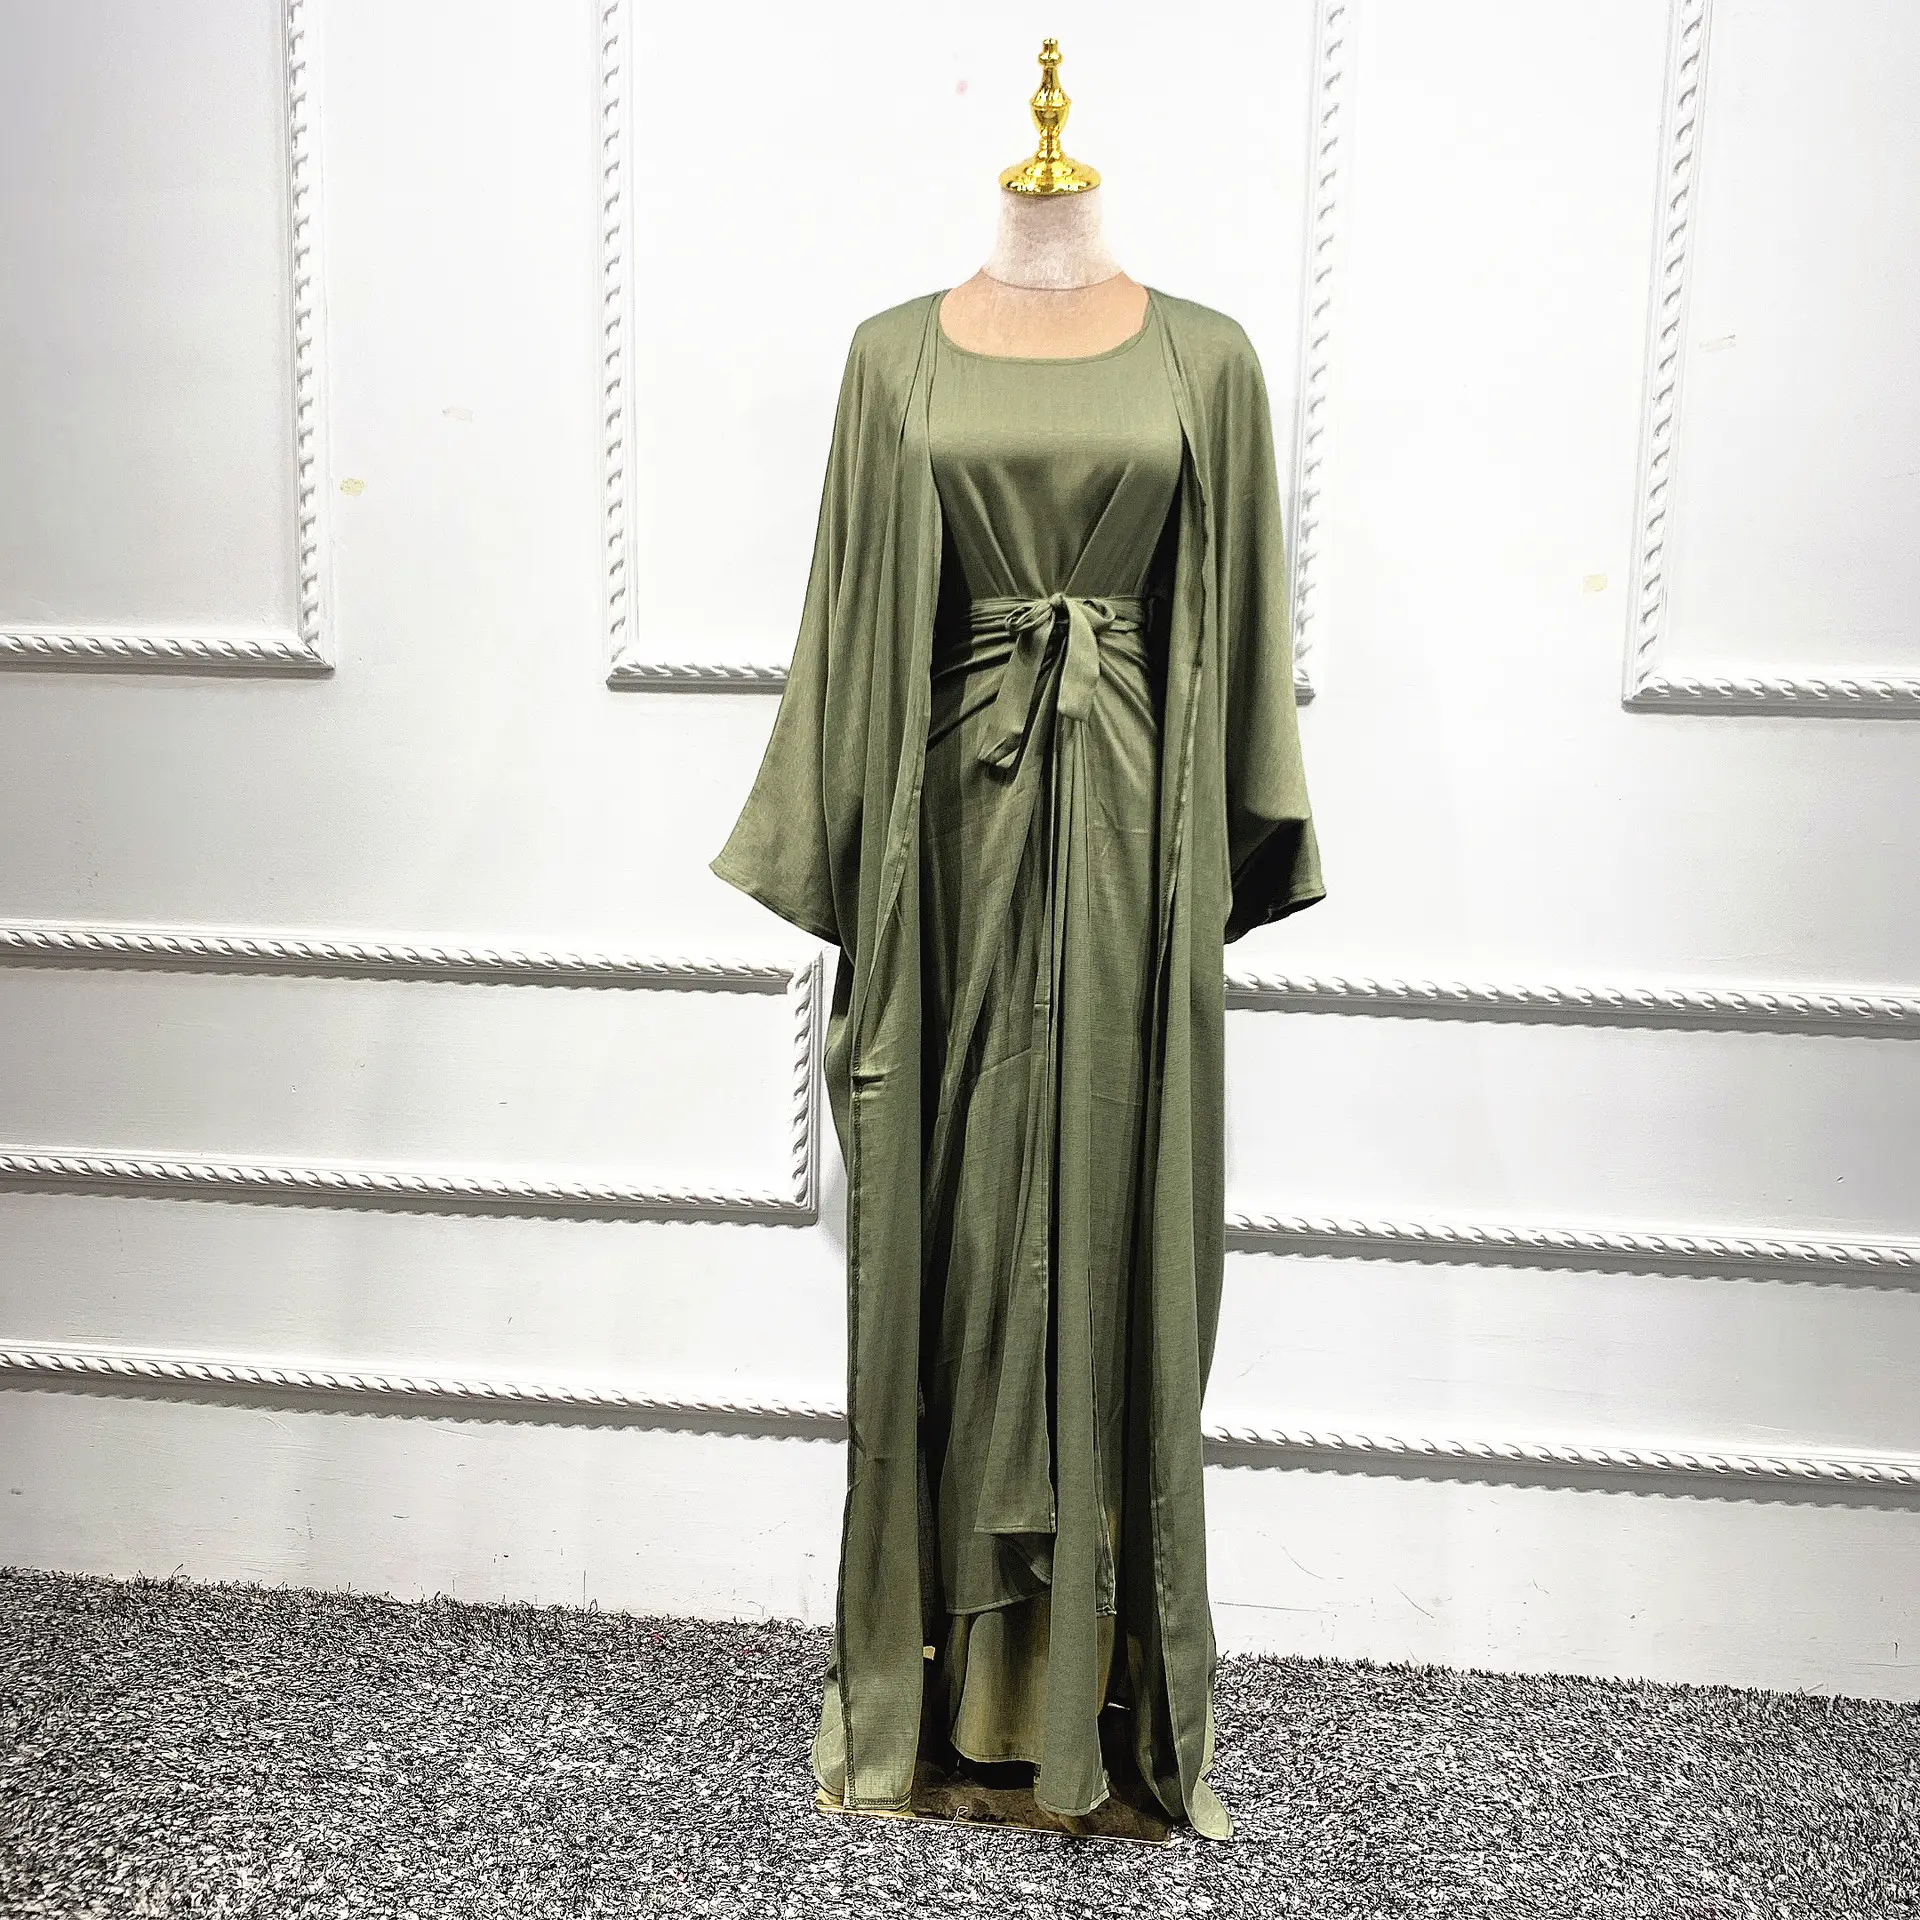 Gamis Abaya Dubai 2021 Baju Muslim Lengan Panjang Baju Islami untuk Wanita Baju Muslim Musim Gugur Gaun Tiga Potong Gaun